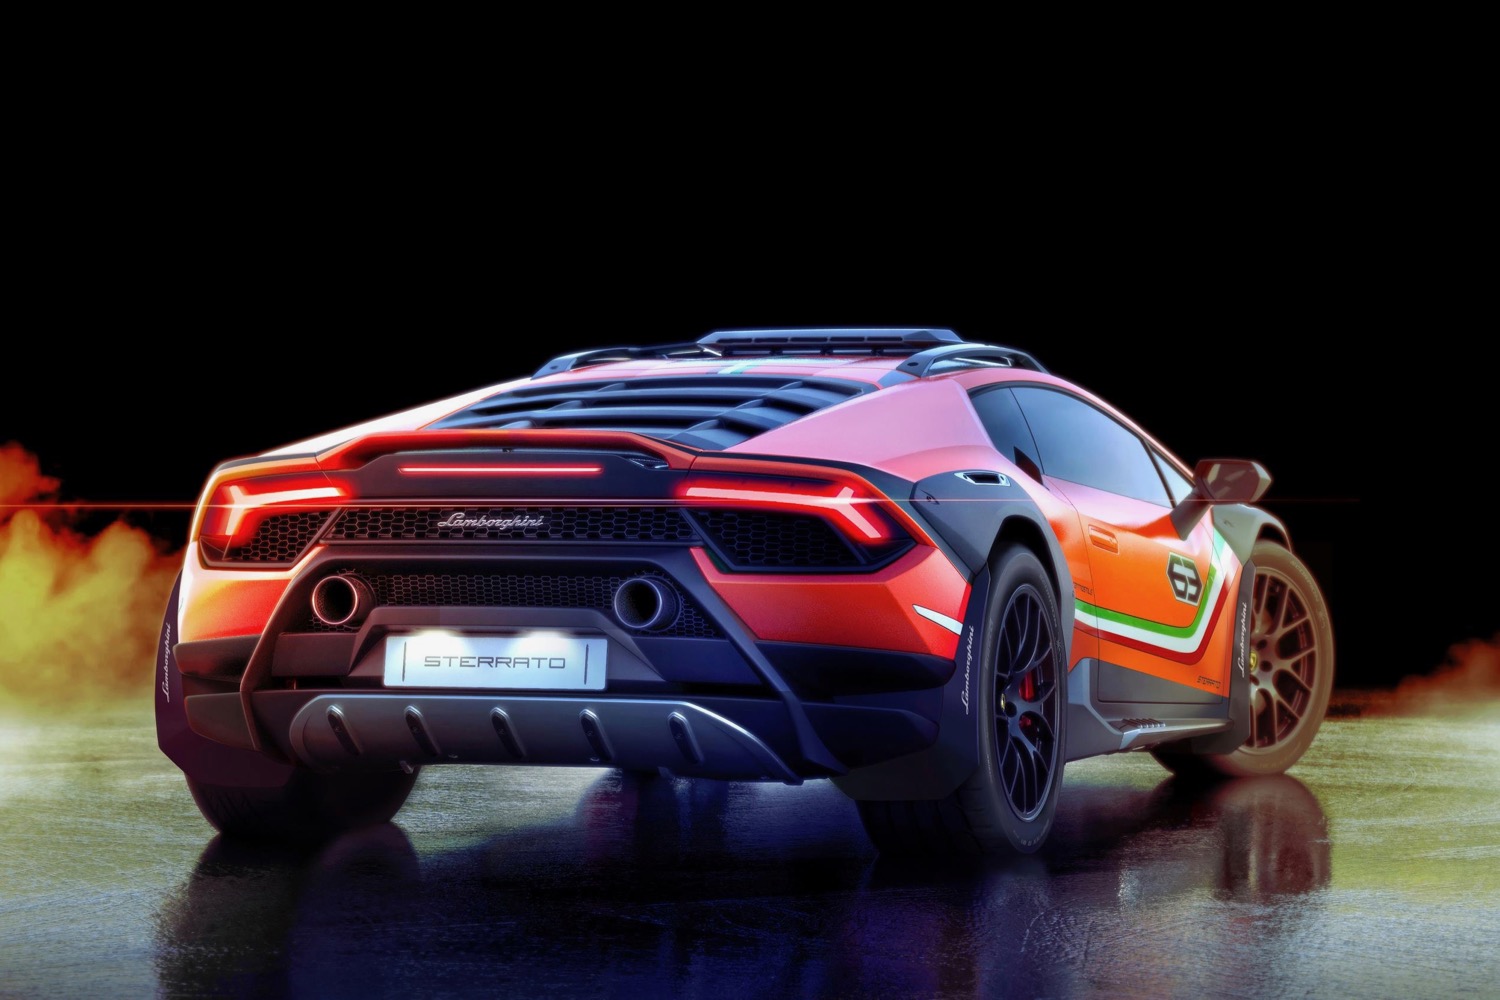 Lamborghini Huracán Sterrato concept